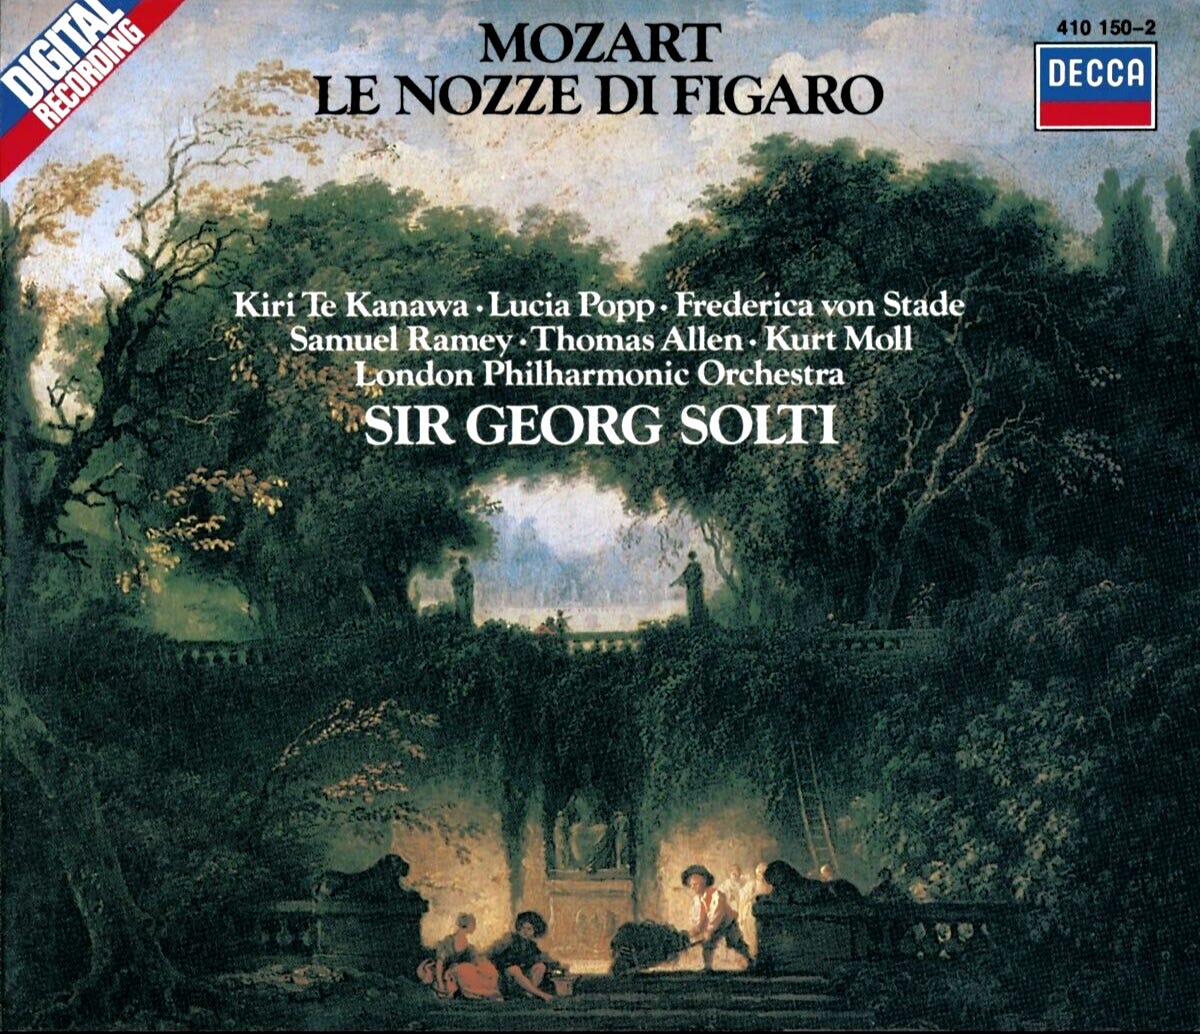 Mozart Le Nozze di Figaro SIR GEORG SOLTI Decca 3CD Box 410150-2 PDO Full Silver - Picture 1 of 1